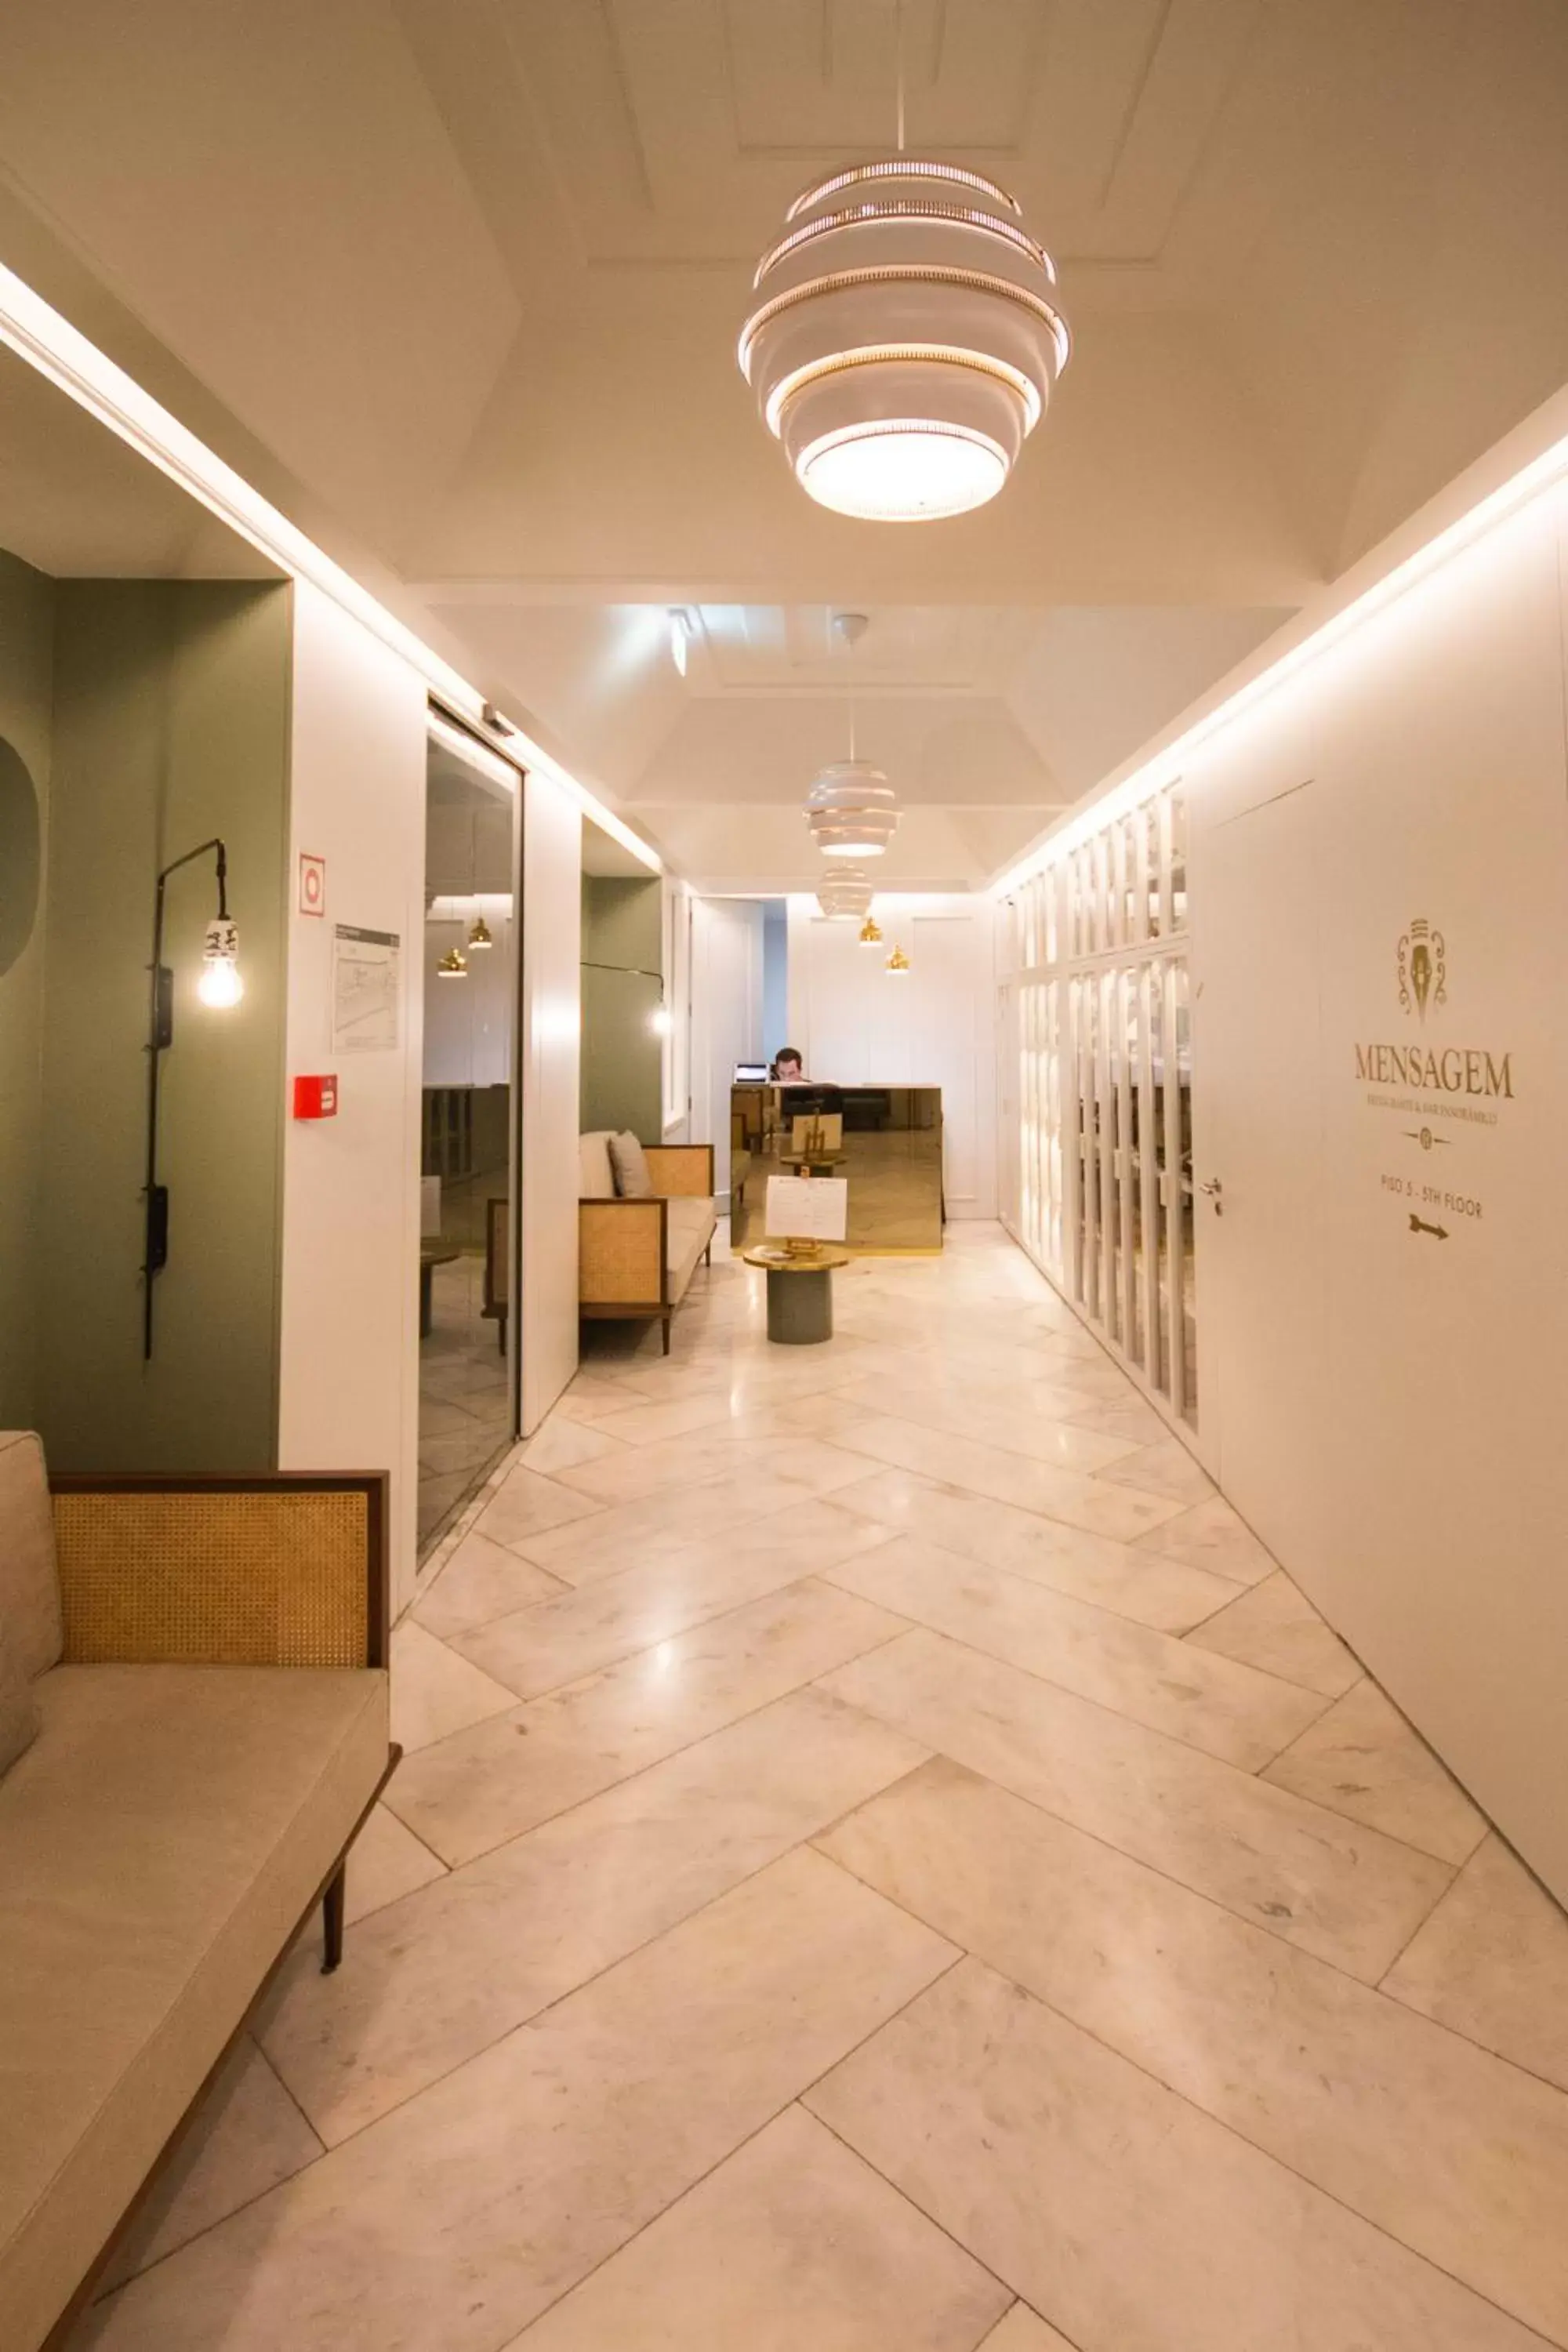 Lobby or reception, Lobby/Reception in Lisboa Pessoa Hotel